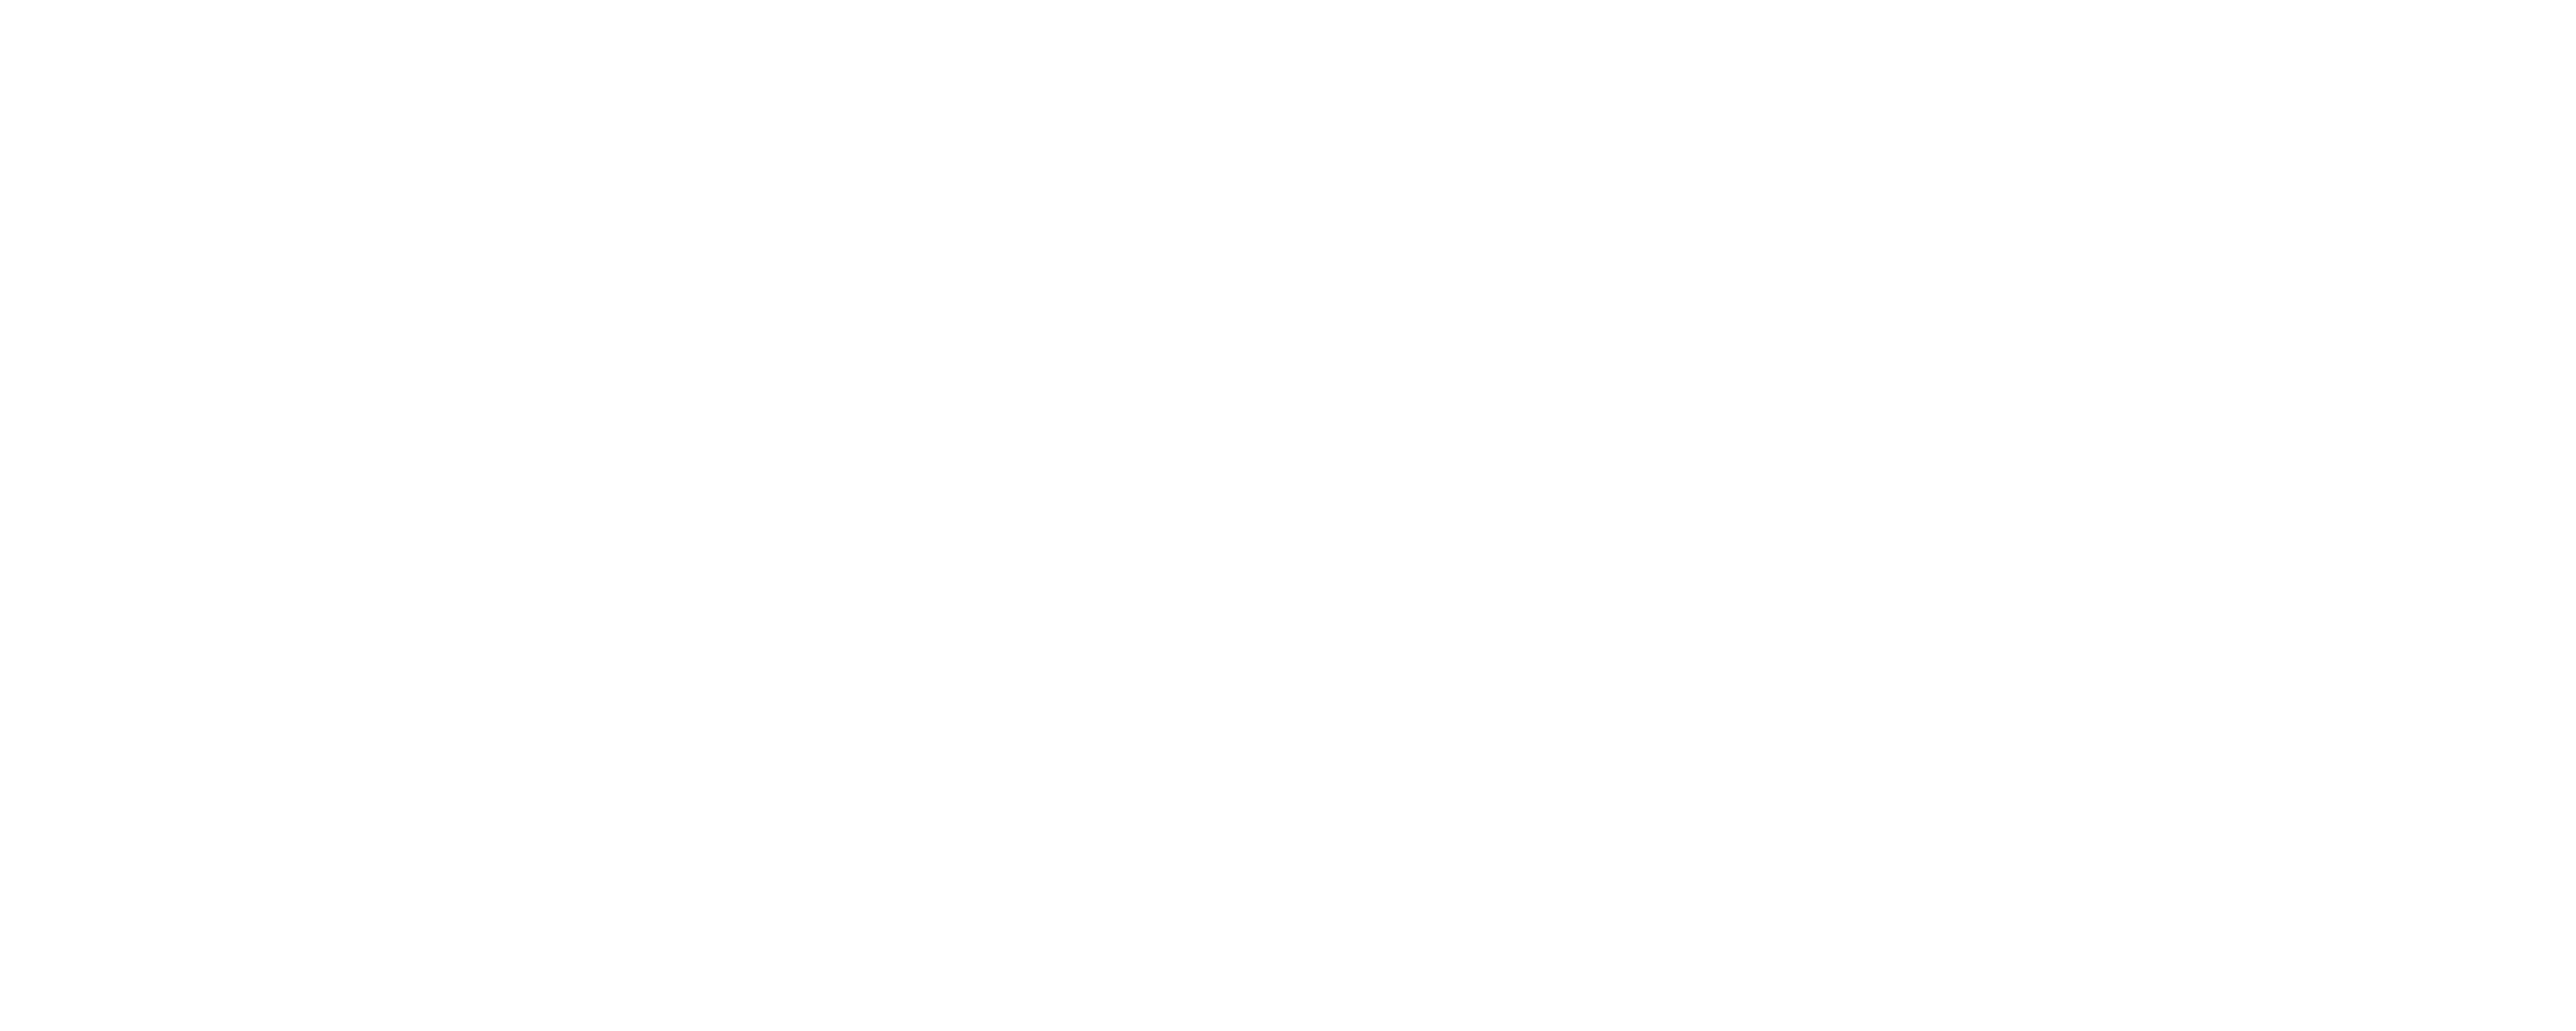 Tech Showcase